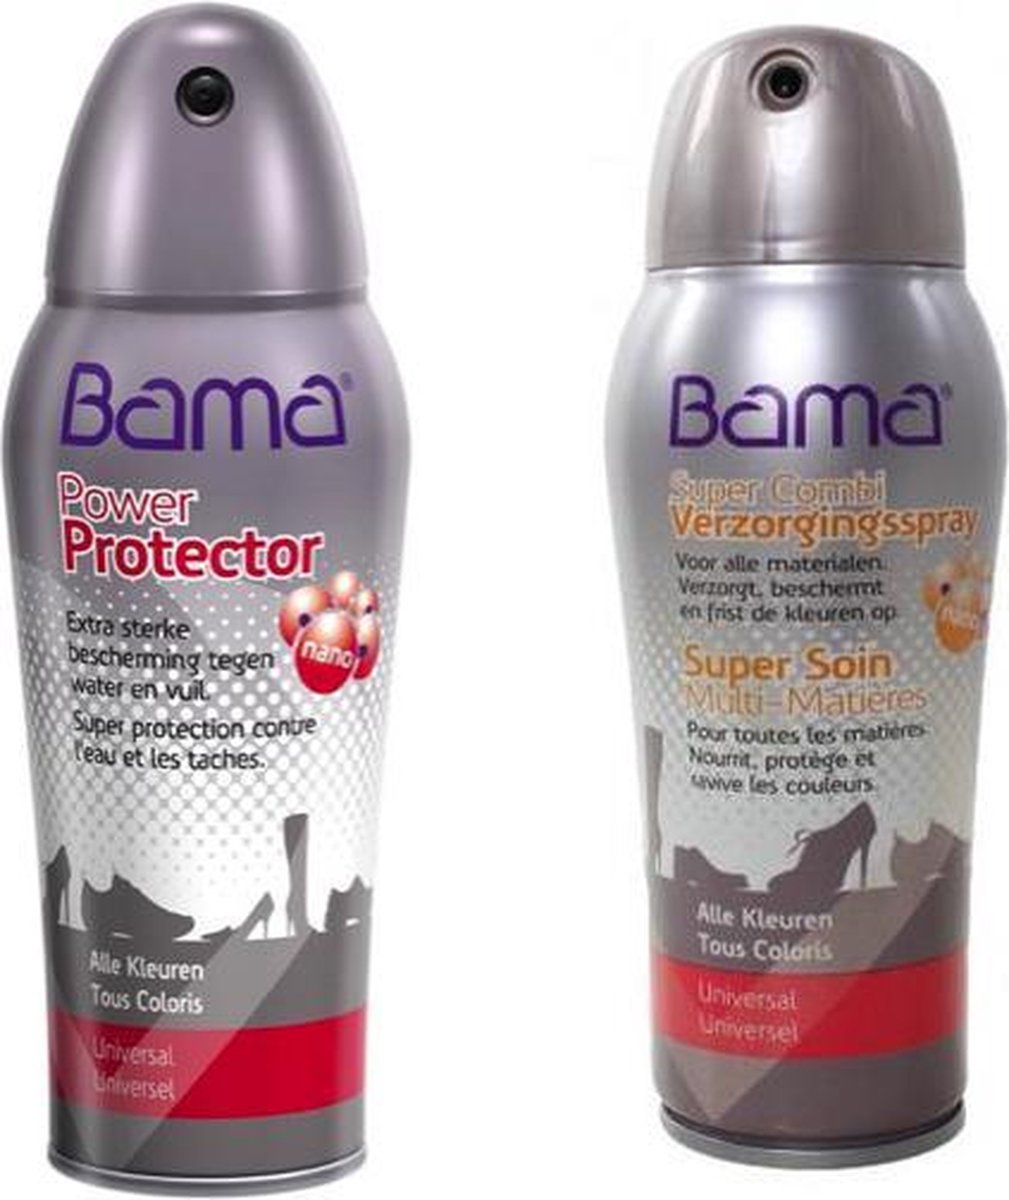 Bama Combi Verzorgingsspray - Power Protector 300ml - Bama